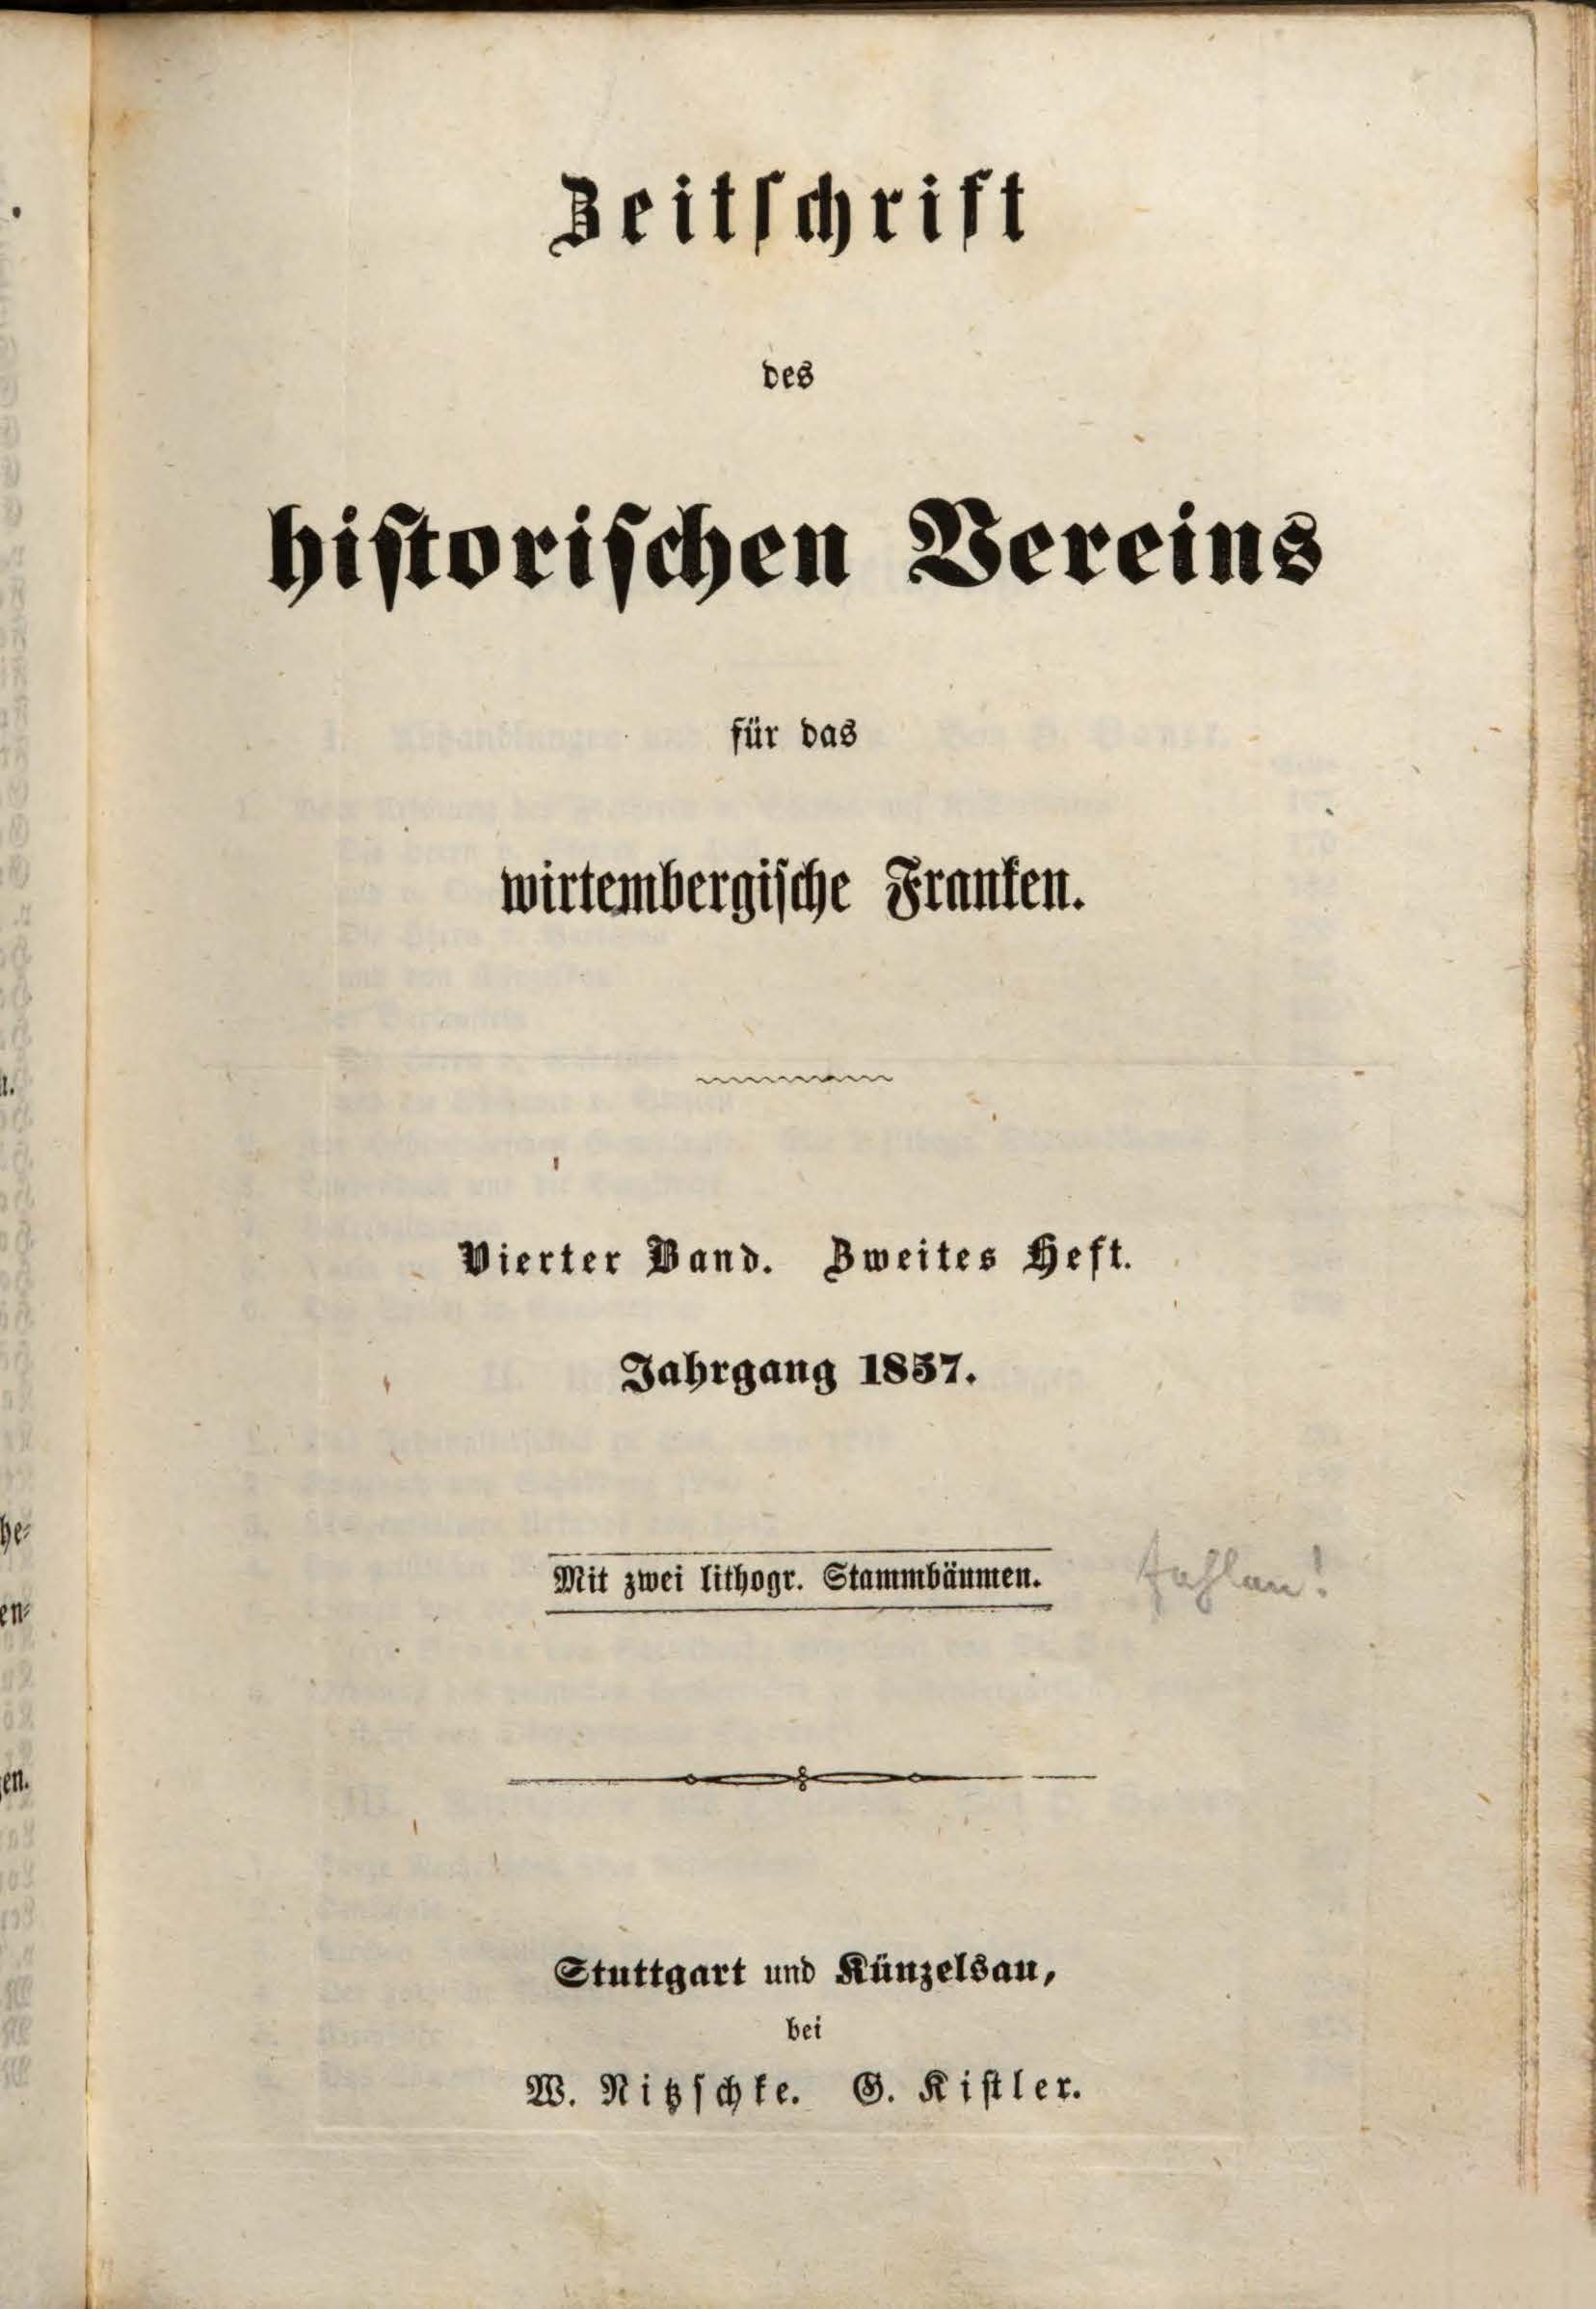                     Ansehen Bd. 4 Nr. 2 (1857): Zeitschrift des Historischen Vereins für das Württembergische Franken
                